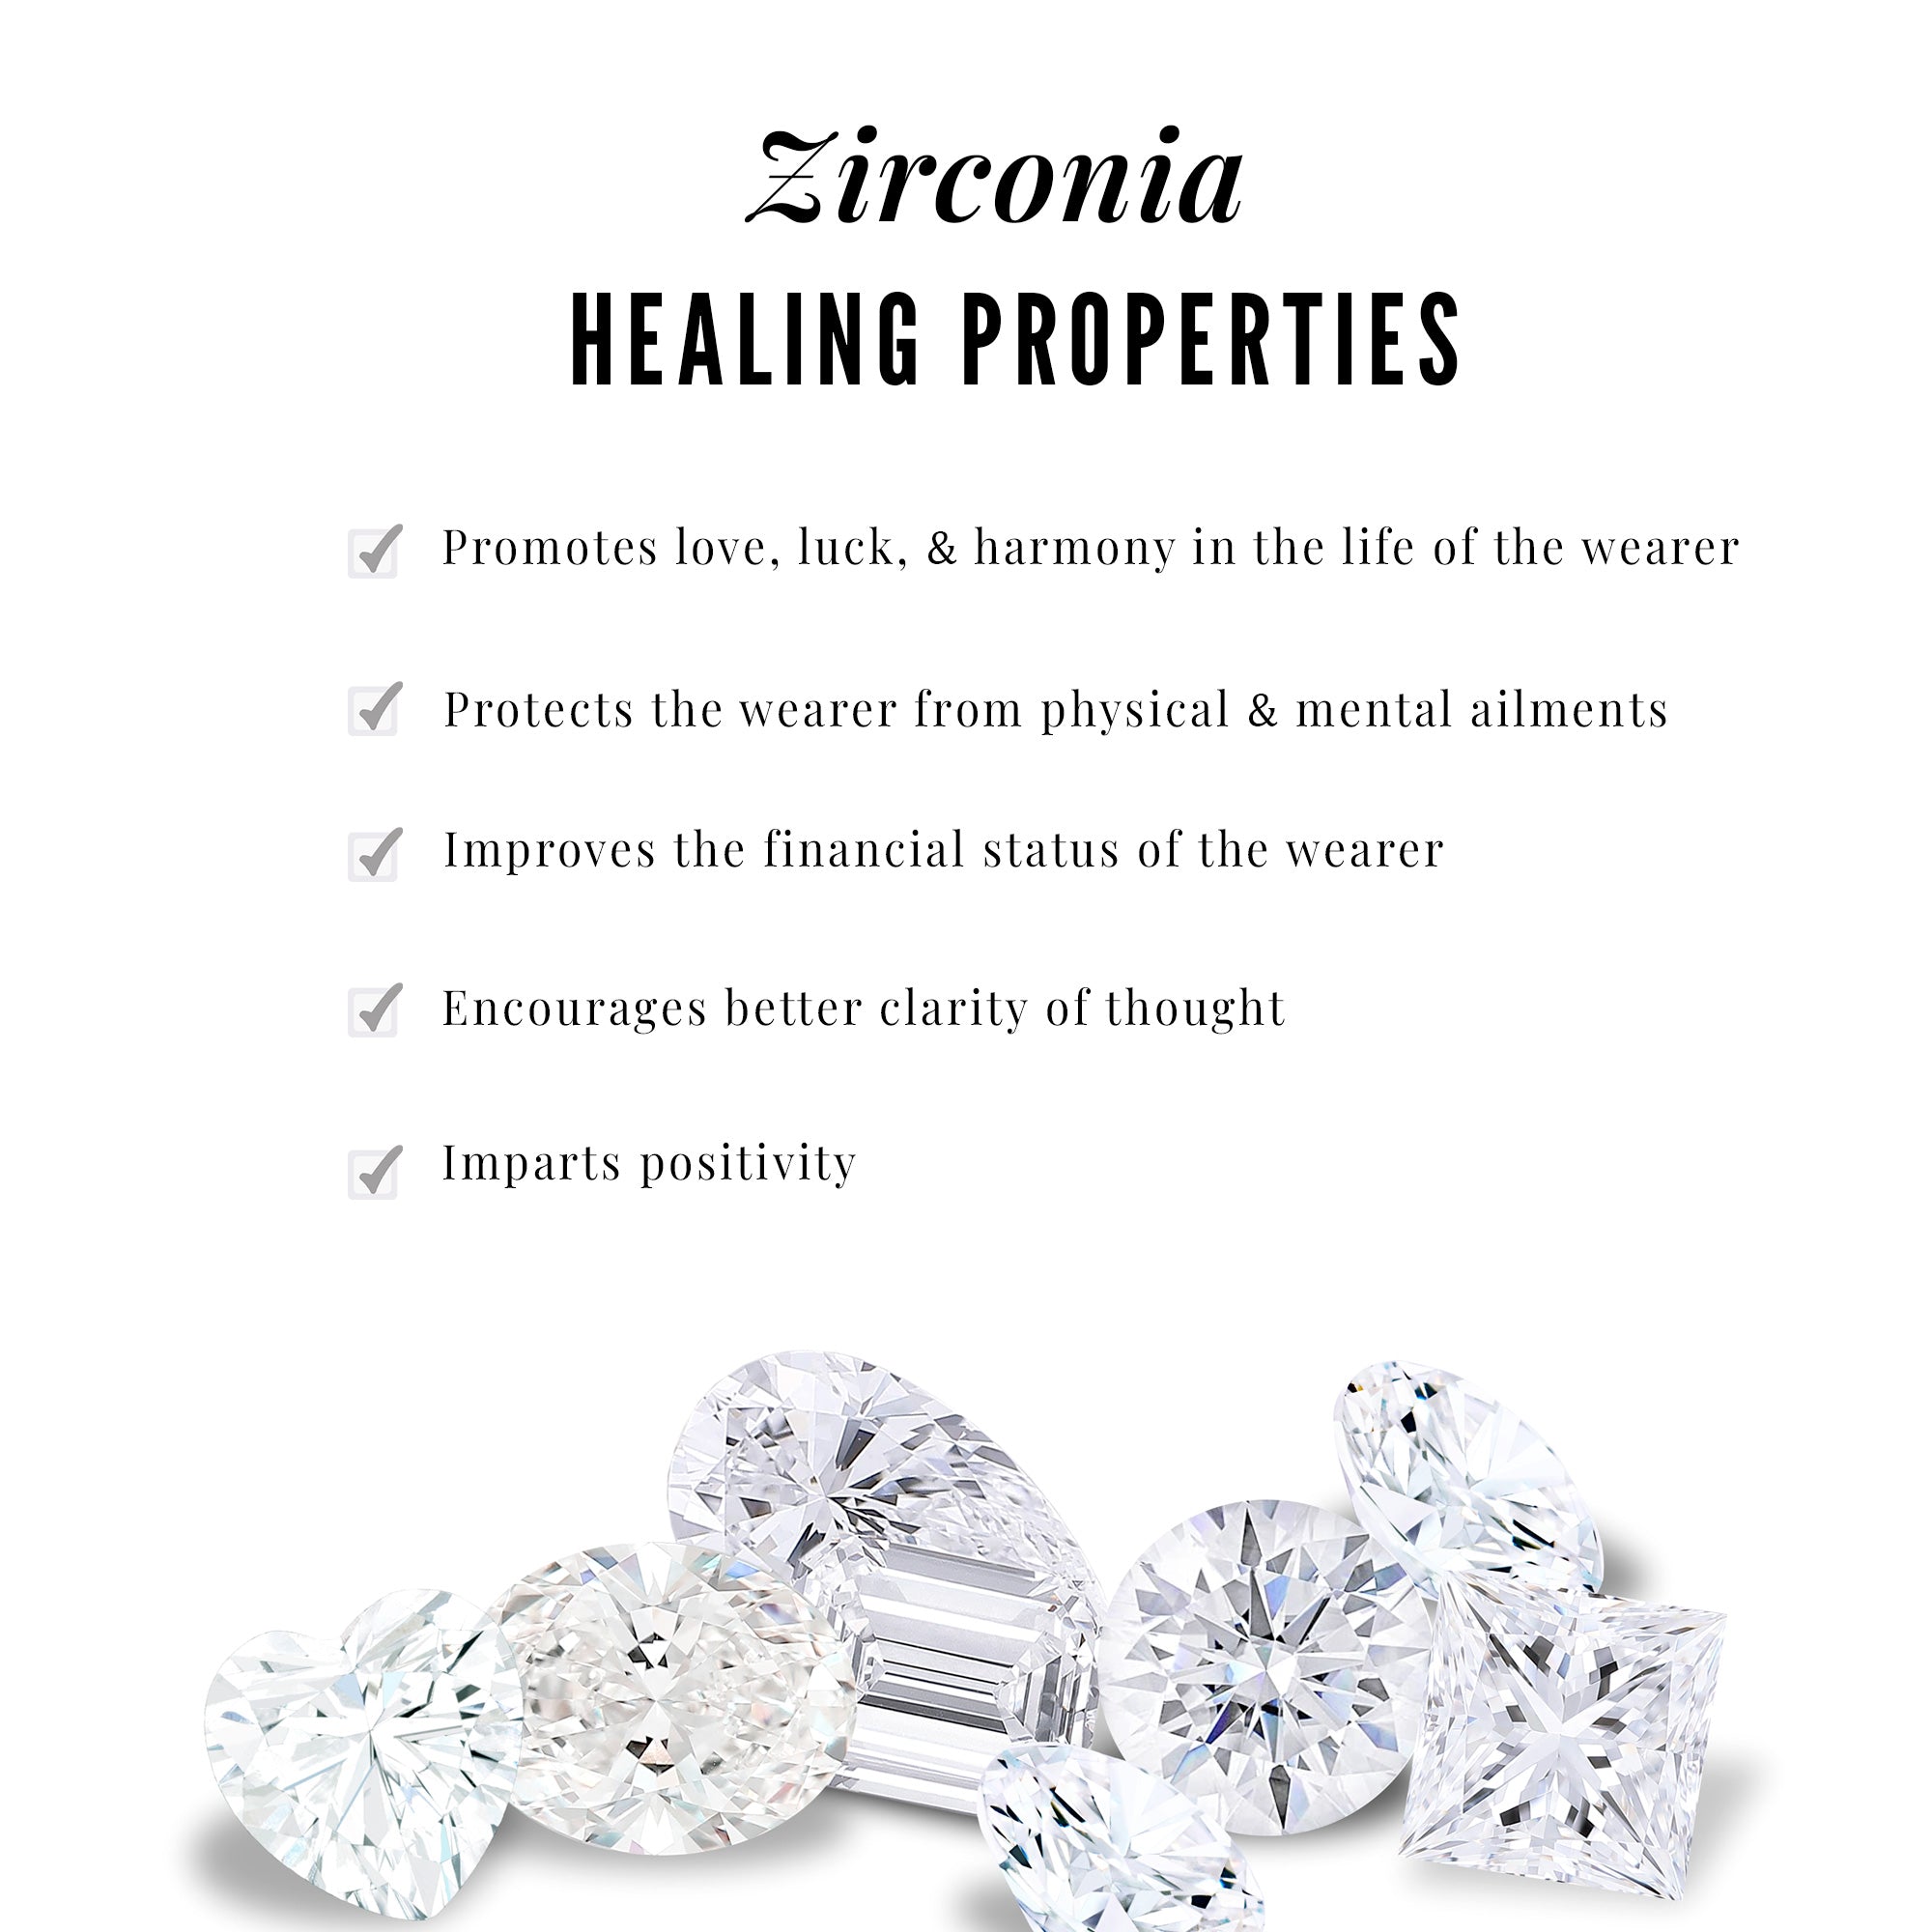 3 CT Baguette and Pear Shape Zircon Dangle Earrings Zircon - ( AAAA ) - Quality - Rosec Jewels